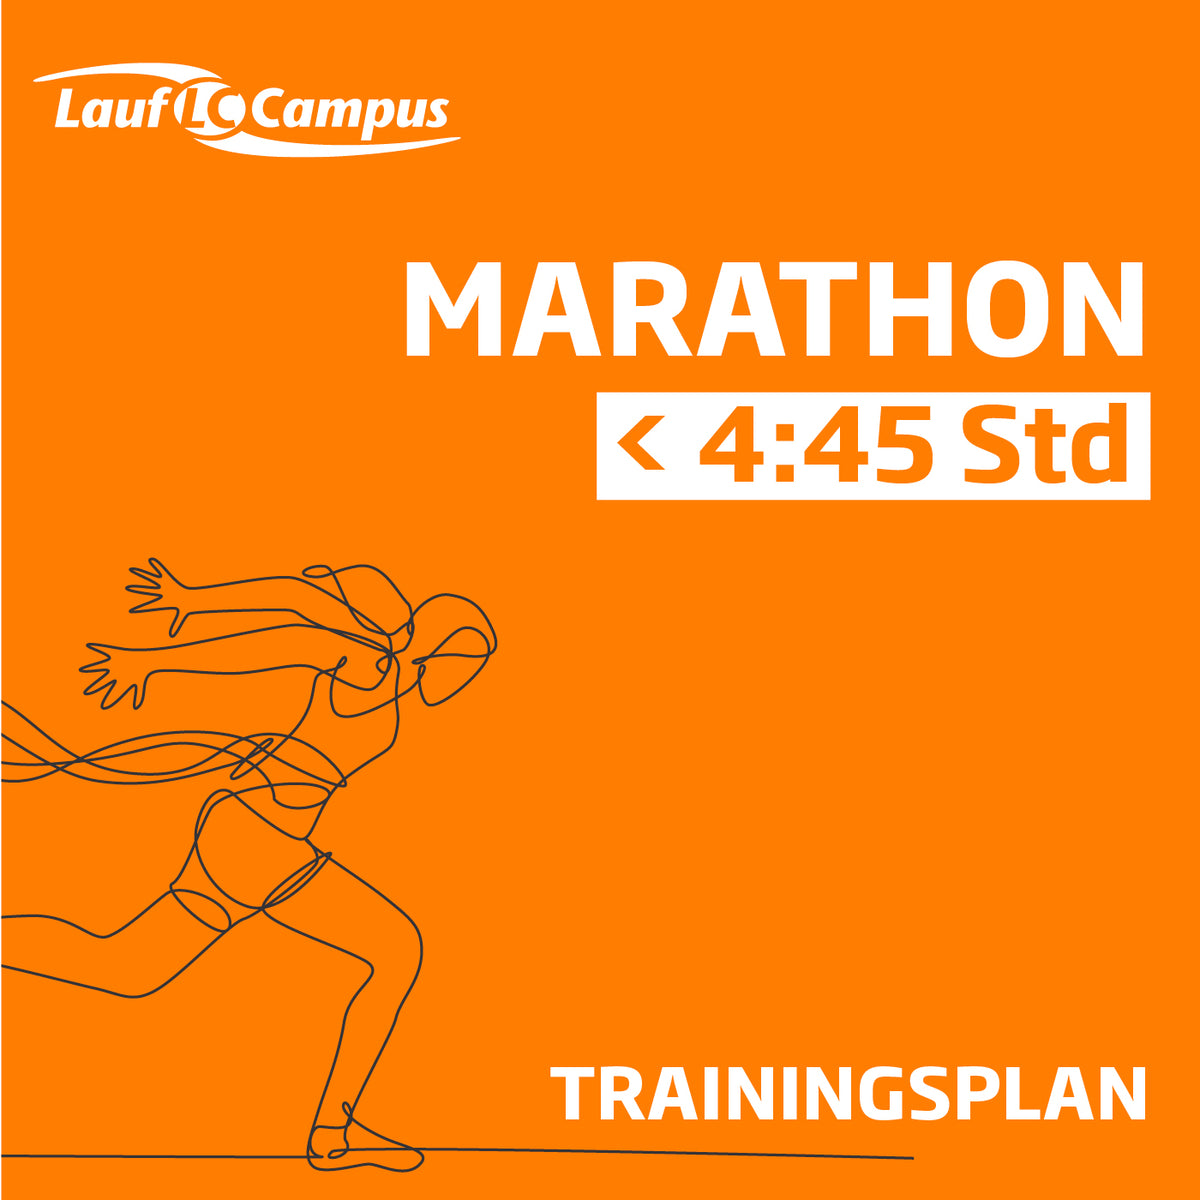 Trainingsplan für Marathon unter 4:45 Stunden